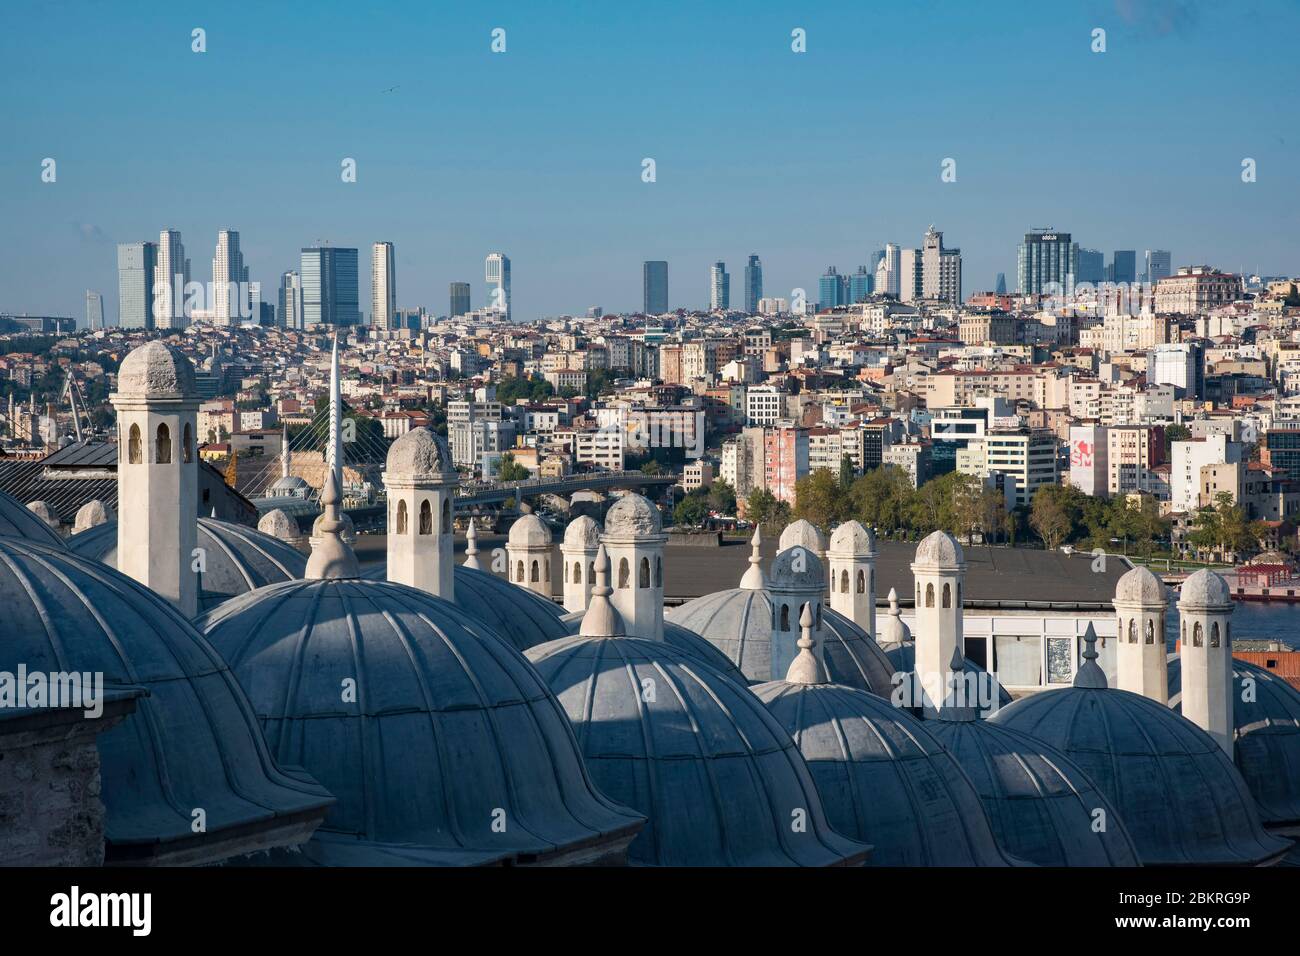 Turquie, Istanbul, mosquée Suleymaniye, depuis l'esplanade, vue sur les dômes des constructions annexes et le quartier de Galata Banque D'Images